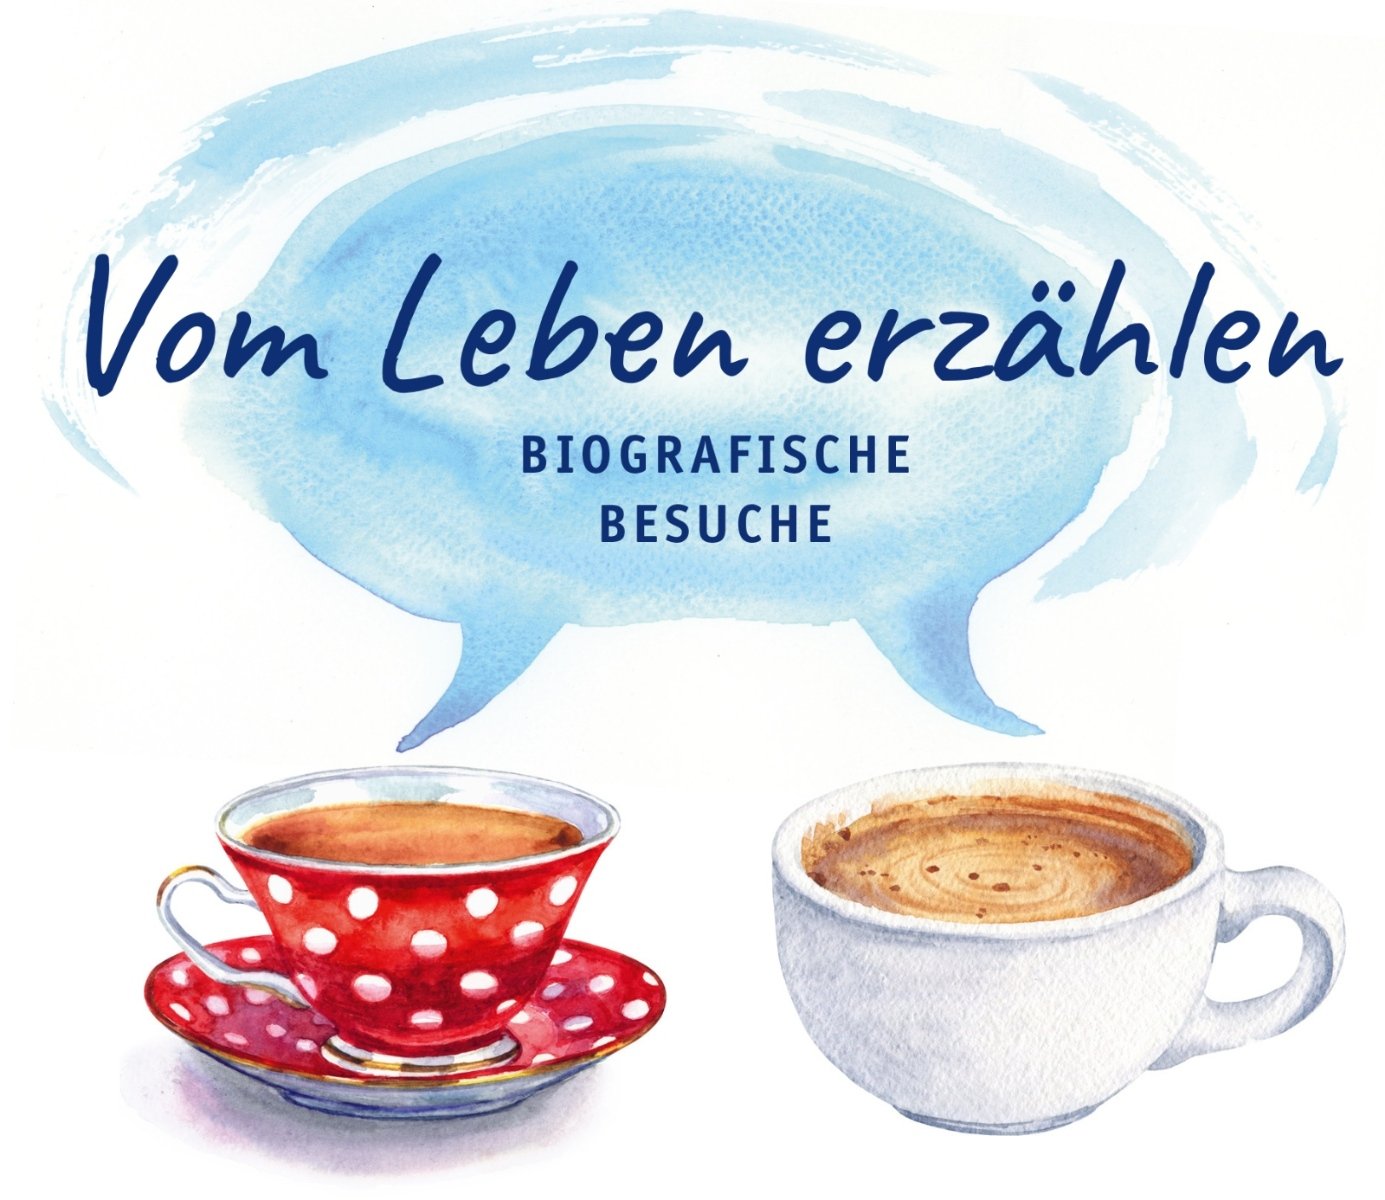 Biografische-Besuche-Logo (c) Erzbistum Köln